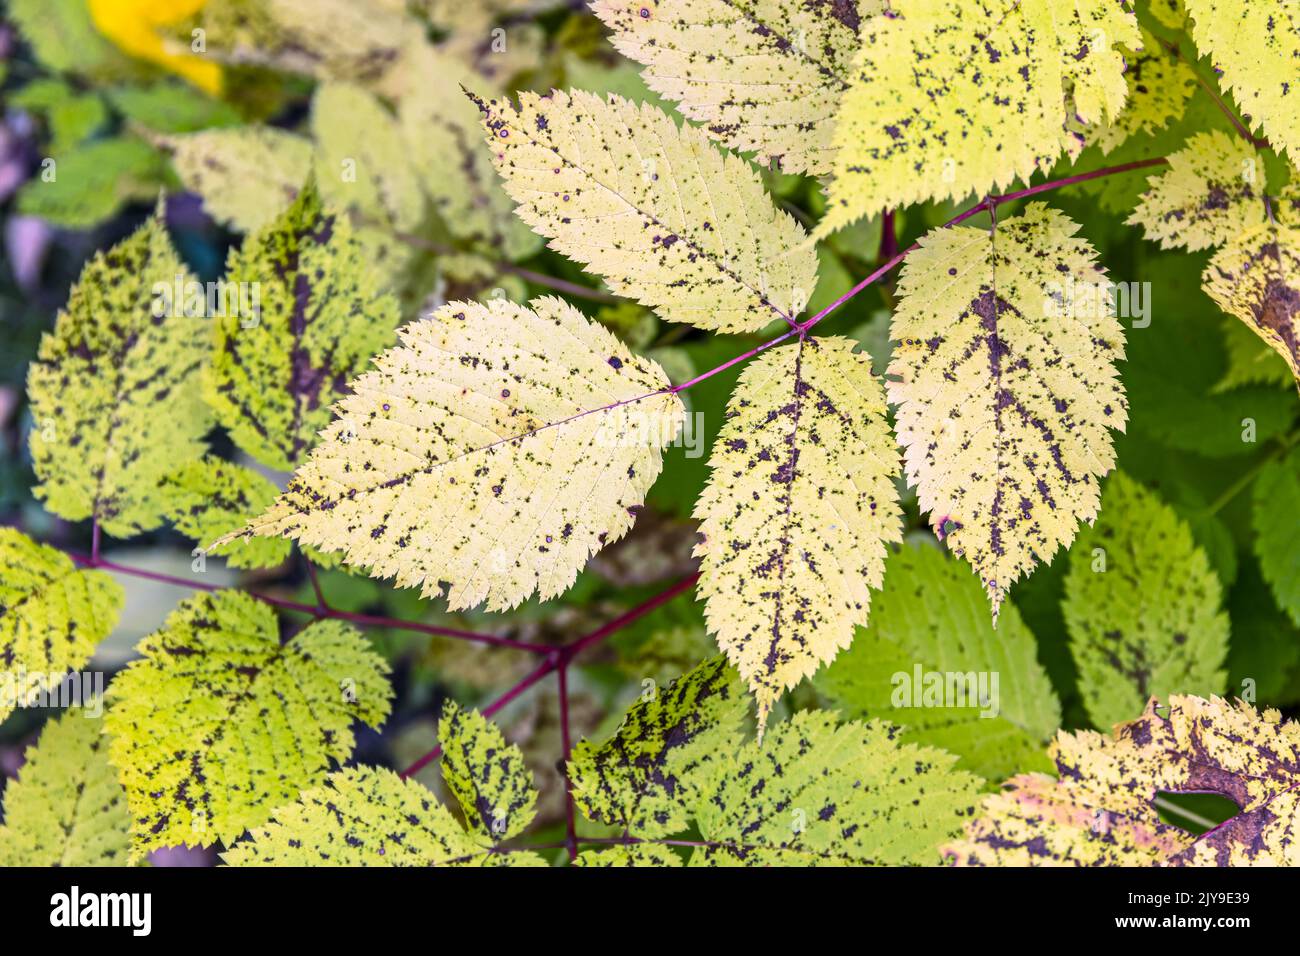 fondo de coloridas y vibrantes hojas otoñales. imagen de la temporada de otoño. Foto de stock